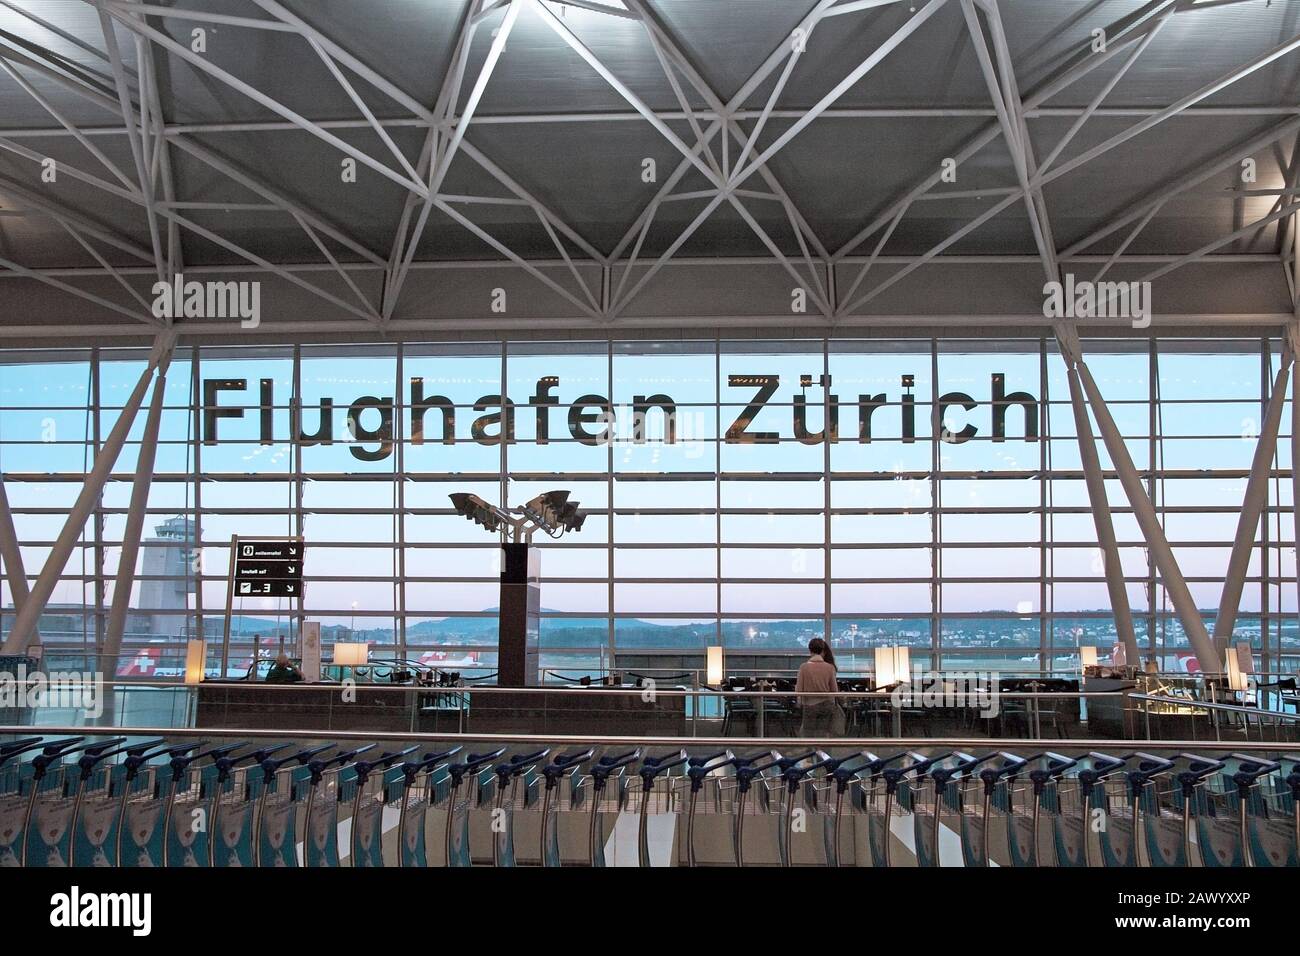 Zurigo, Svizzera - 11 giugno 2017: Aeroporto di Zurigo (Flughafen Zurich) zona d'attesa dopo il check-in - vista verso il campo d'aviazione con scritta Foto Stock